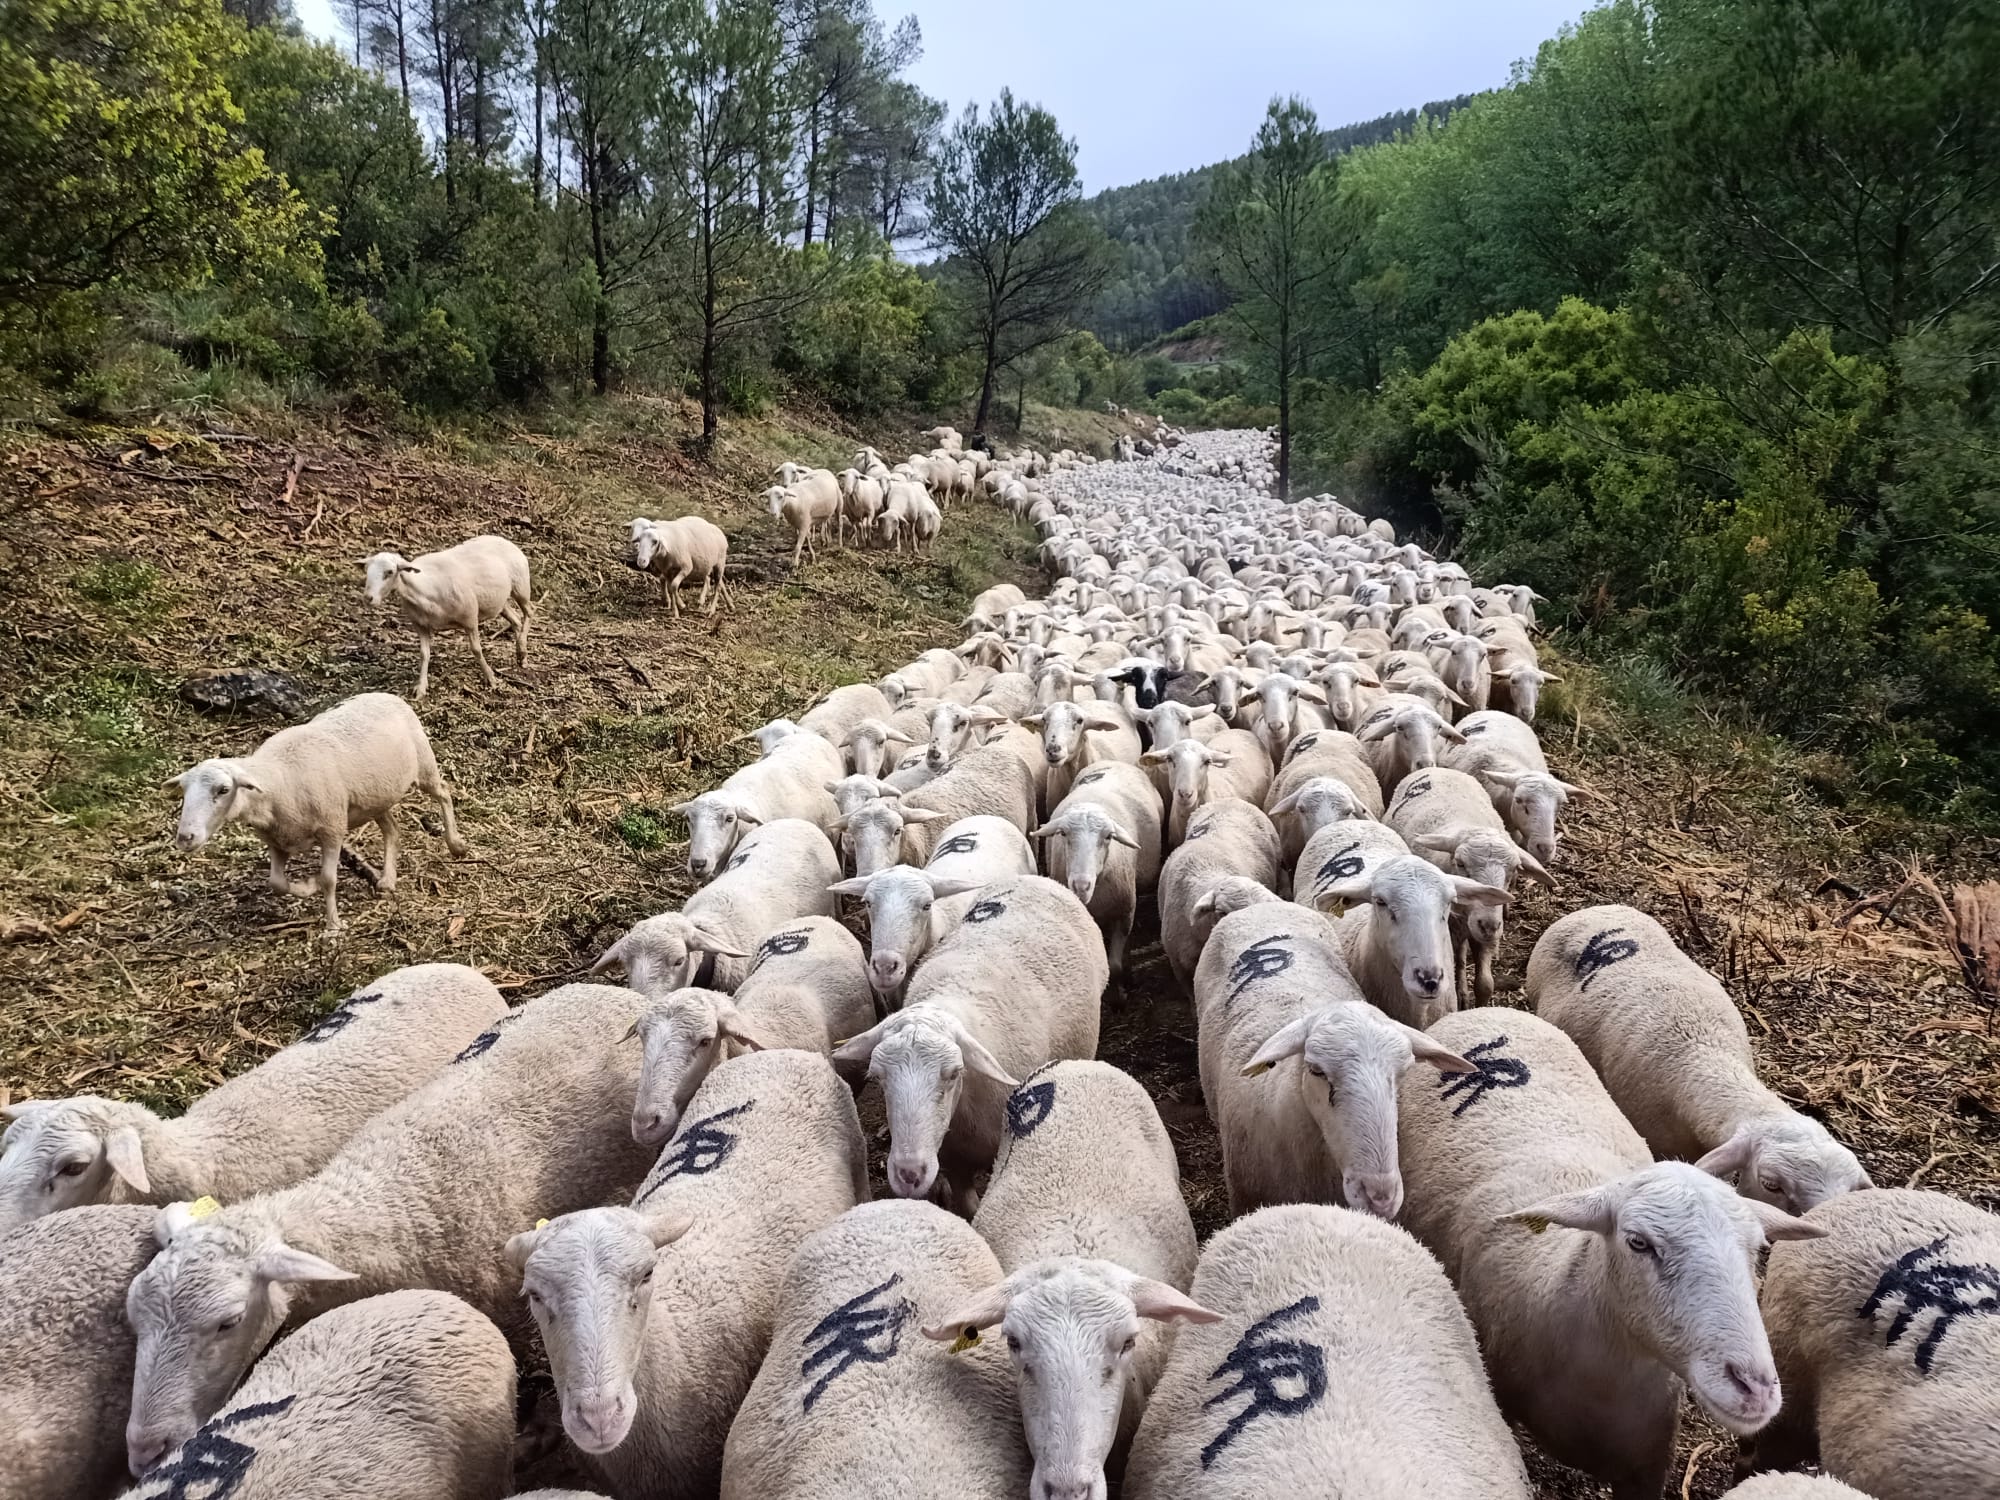 El Gobierno de Navarra completa el desbroce de 8 hectáreas de bosque en la vía pecuaria de los pastores Salacencos a su paso por Cáseda y Lumbier